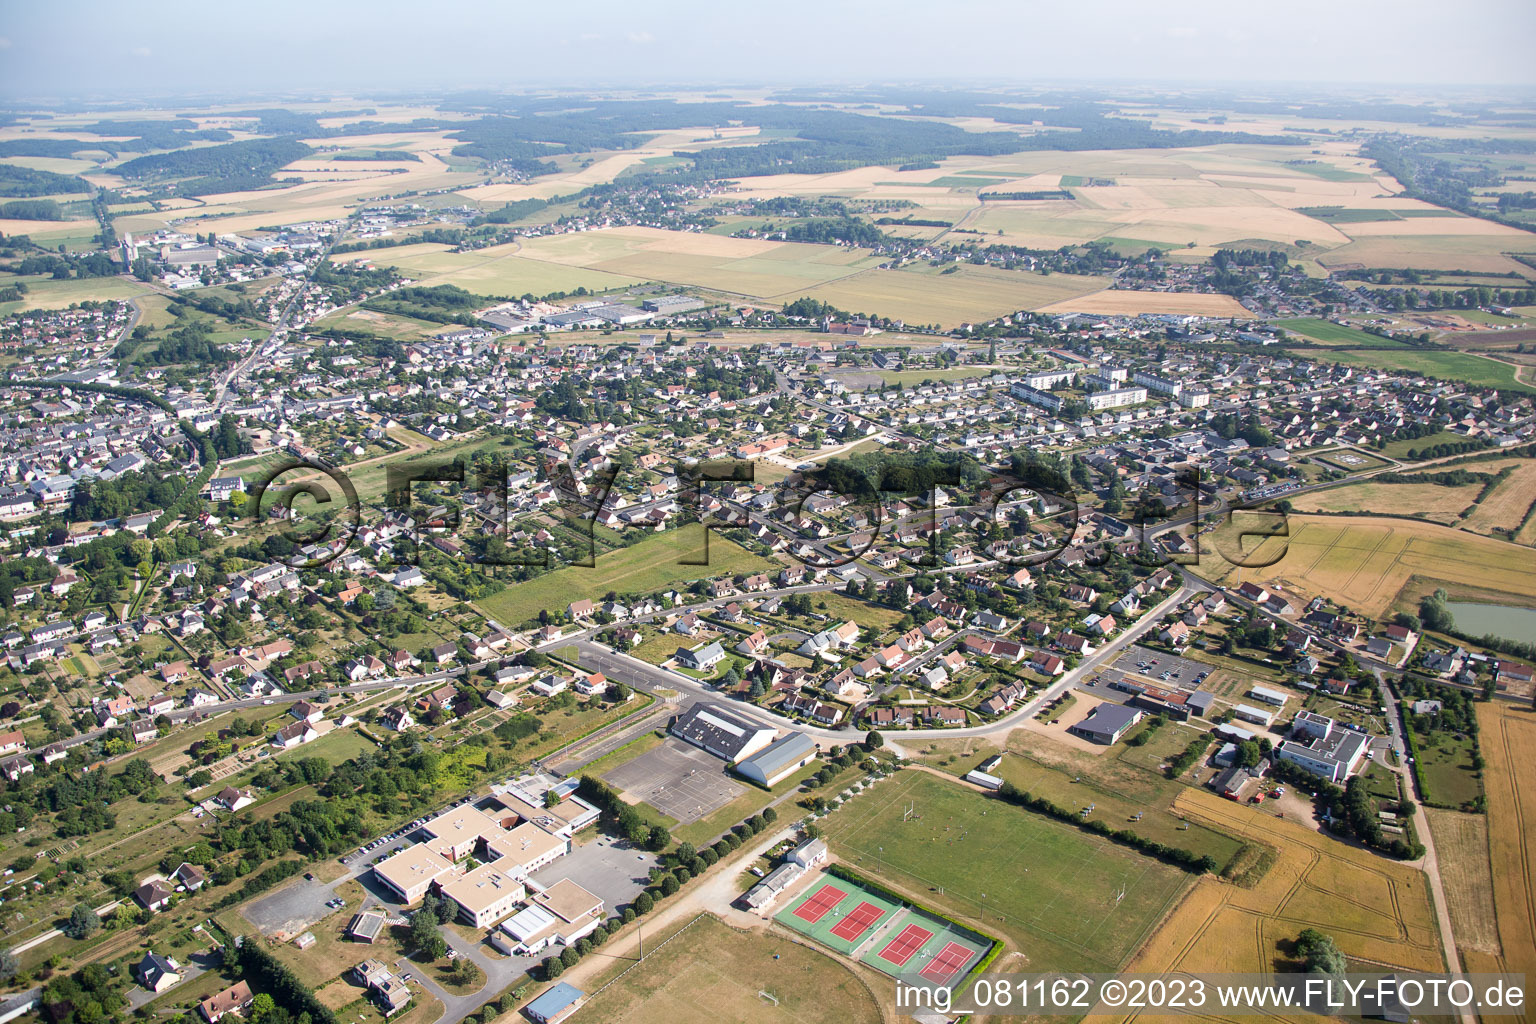 Aerial photograpy of Montoire-sur-le-Loir in the state Loir et Cher, France